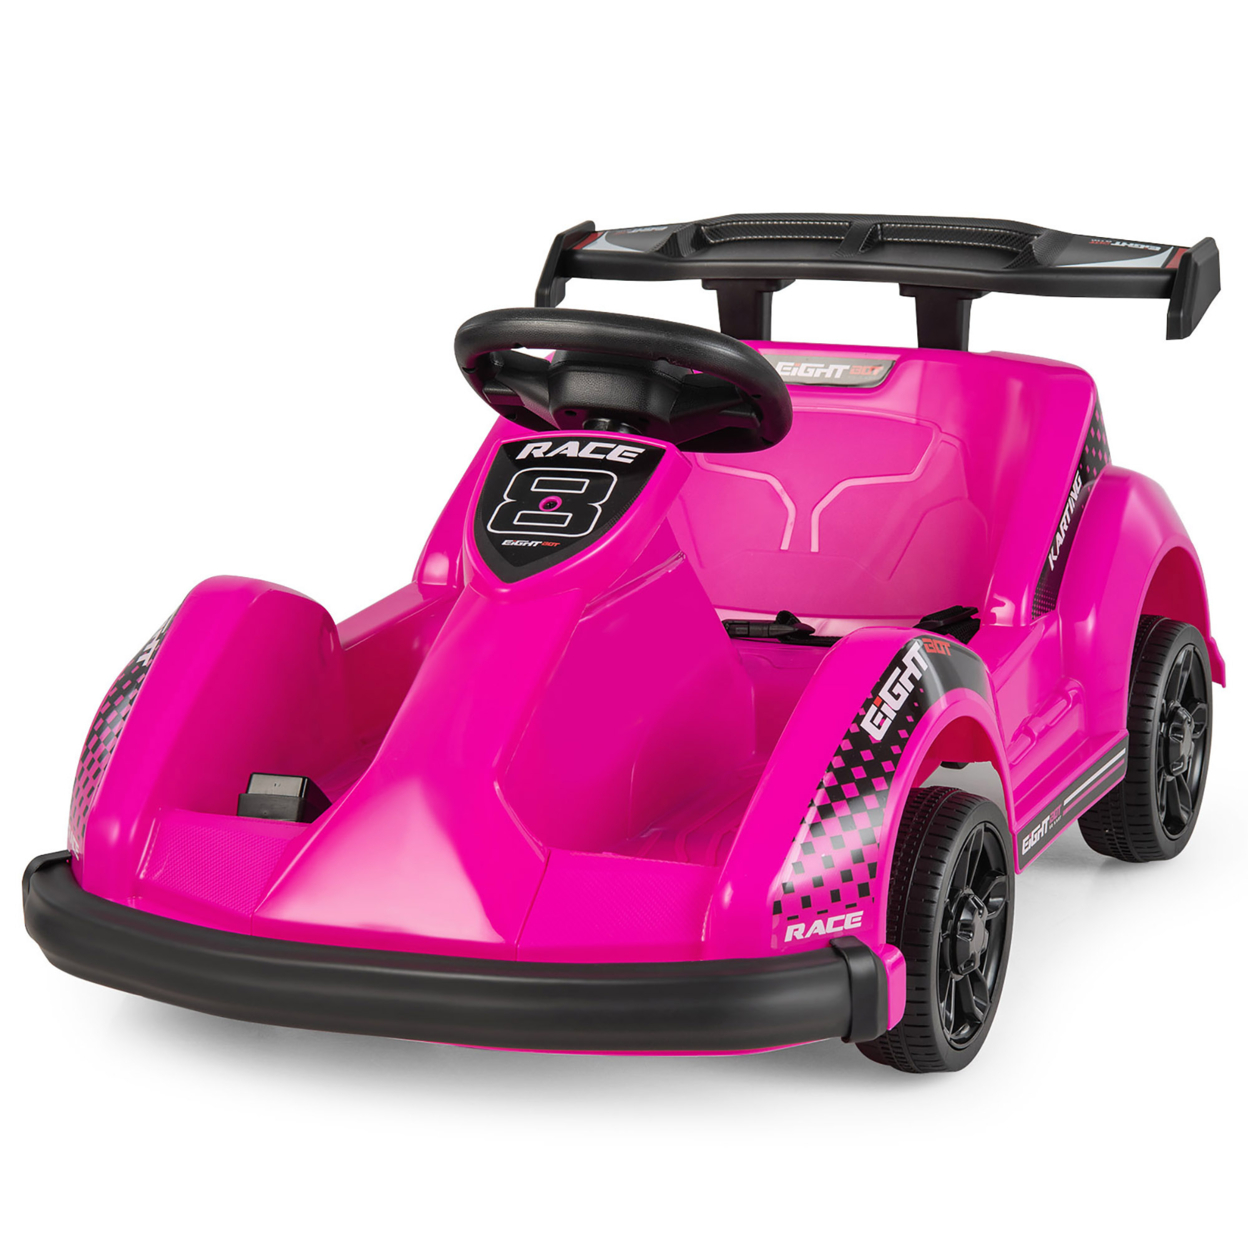 6V Battery Powered Go Kart Kids Ride On 4 Wheel Racer RC W/ Bumper & Music - Black